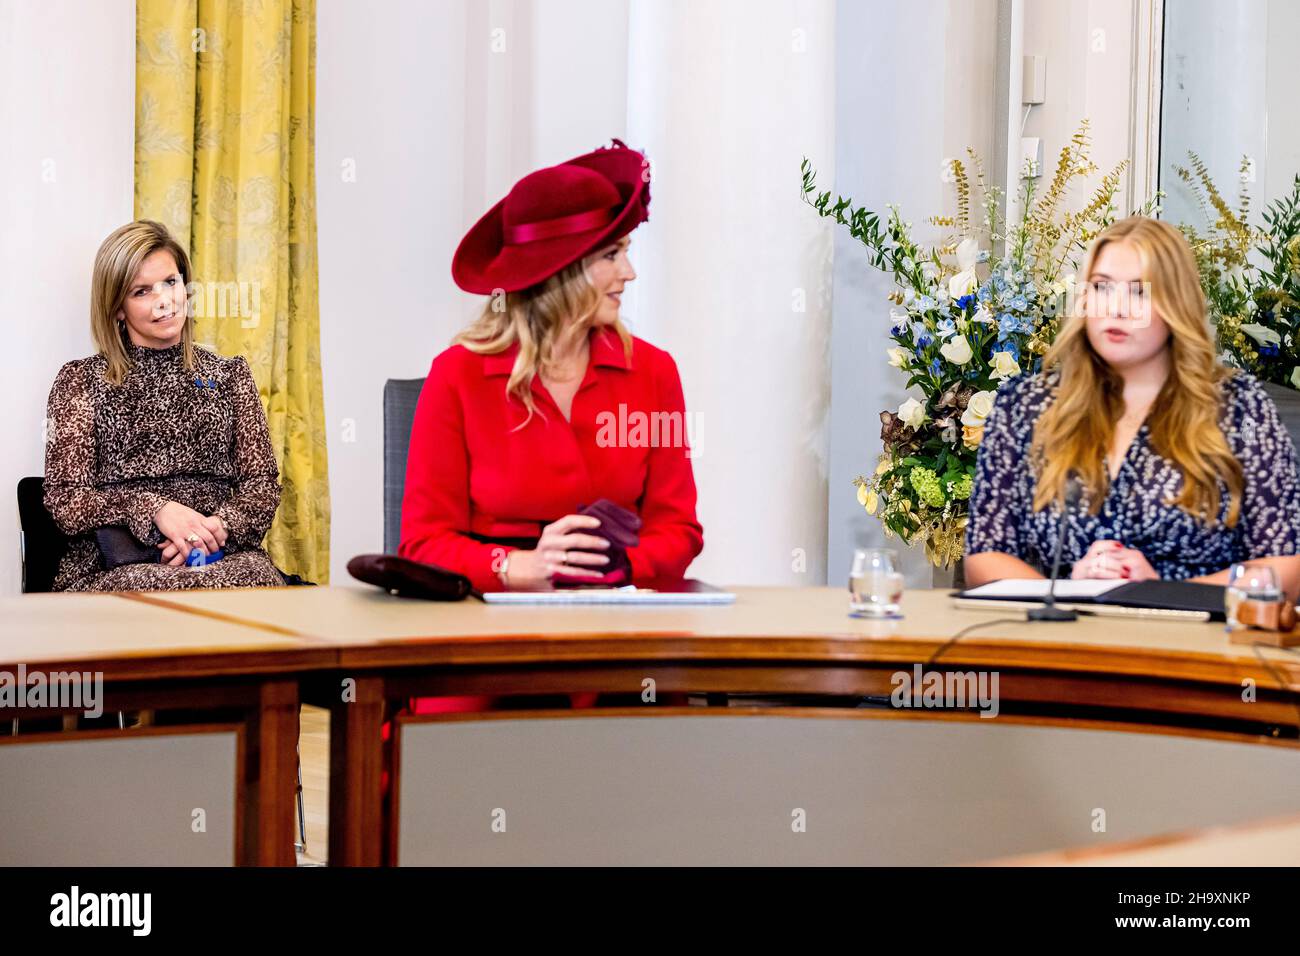 LA HAYA - Princesa Amalia de los Países Bajos se presenta en el Consejo de Estado en presencia del Rey Willem-Alexander y la Reina Maxima de los Países Bajos, 8 de diciembre de 2021. Foto: Patrick van Katwijk Foto de stock